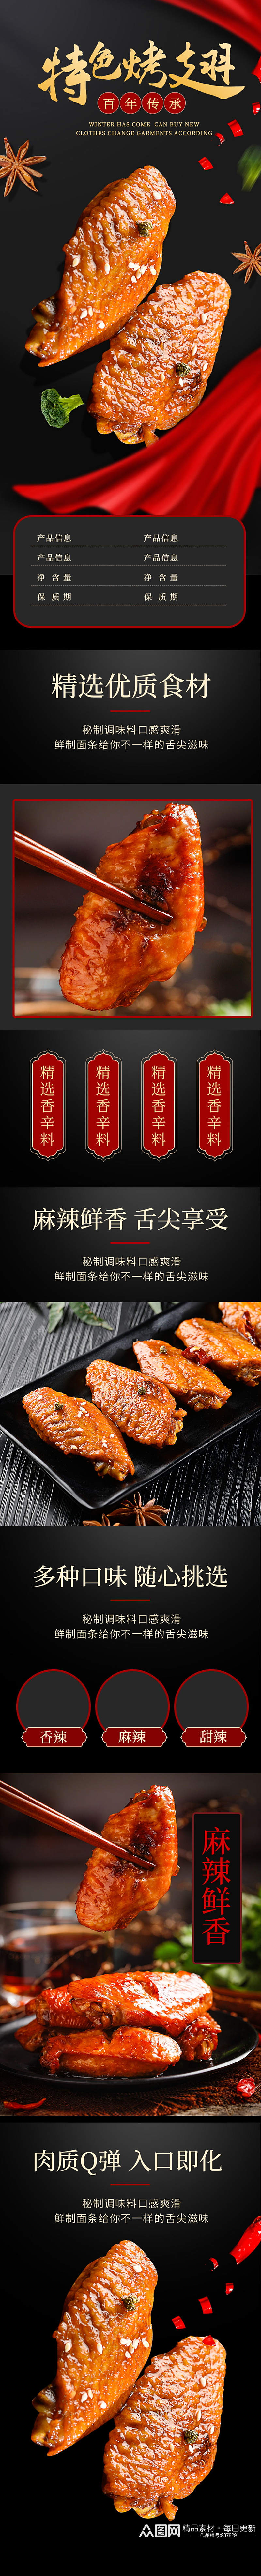 天猫中国风美食烤鸡翅详情素材